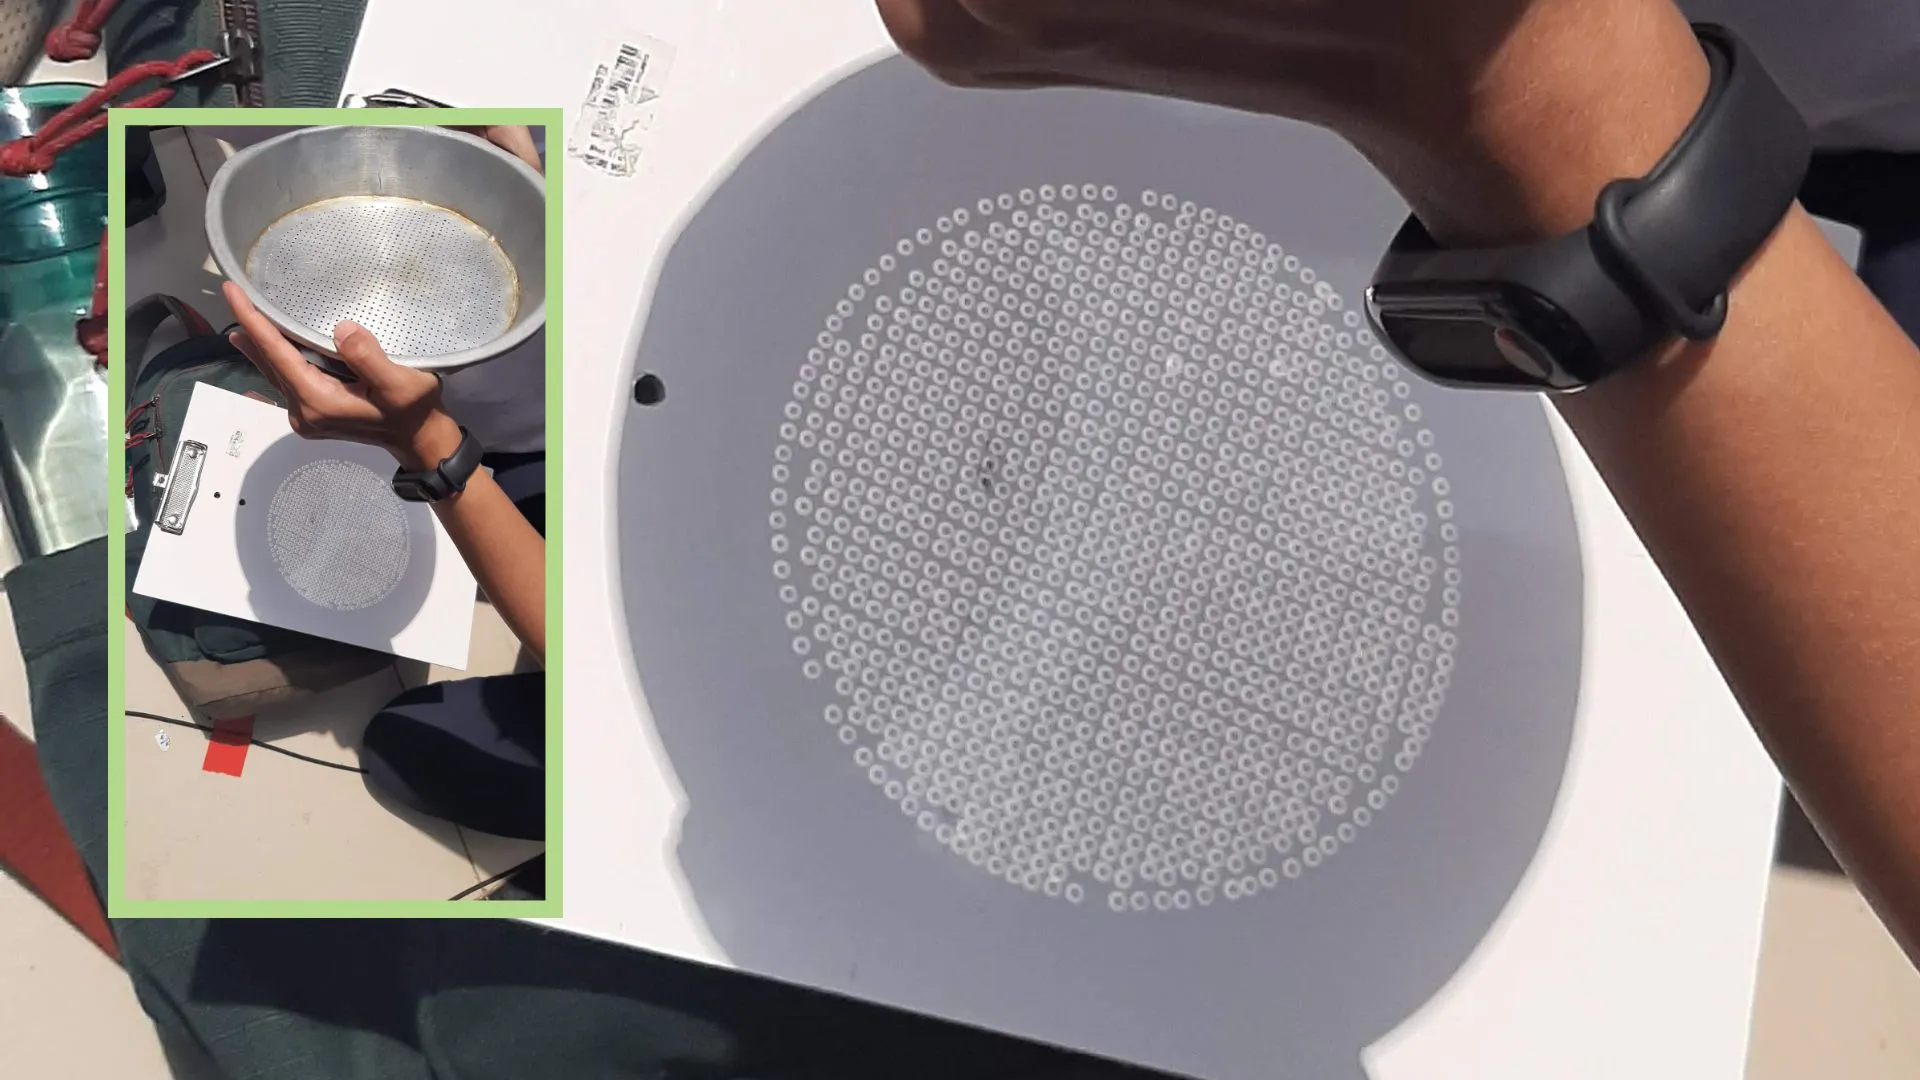 **Gambar 2.** Proyeksi gerhana matahari cincin dengan saringan di atas kertas. Inset: Cara penggunaan saringan untuk proyeksi Matahari. 